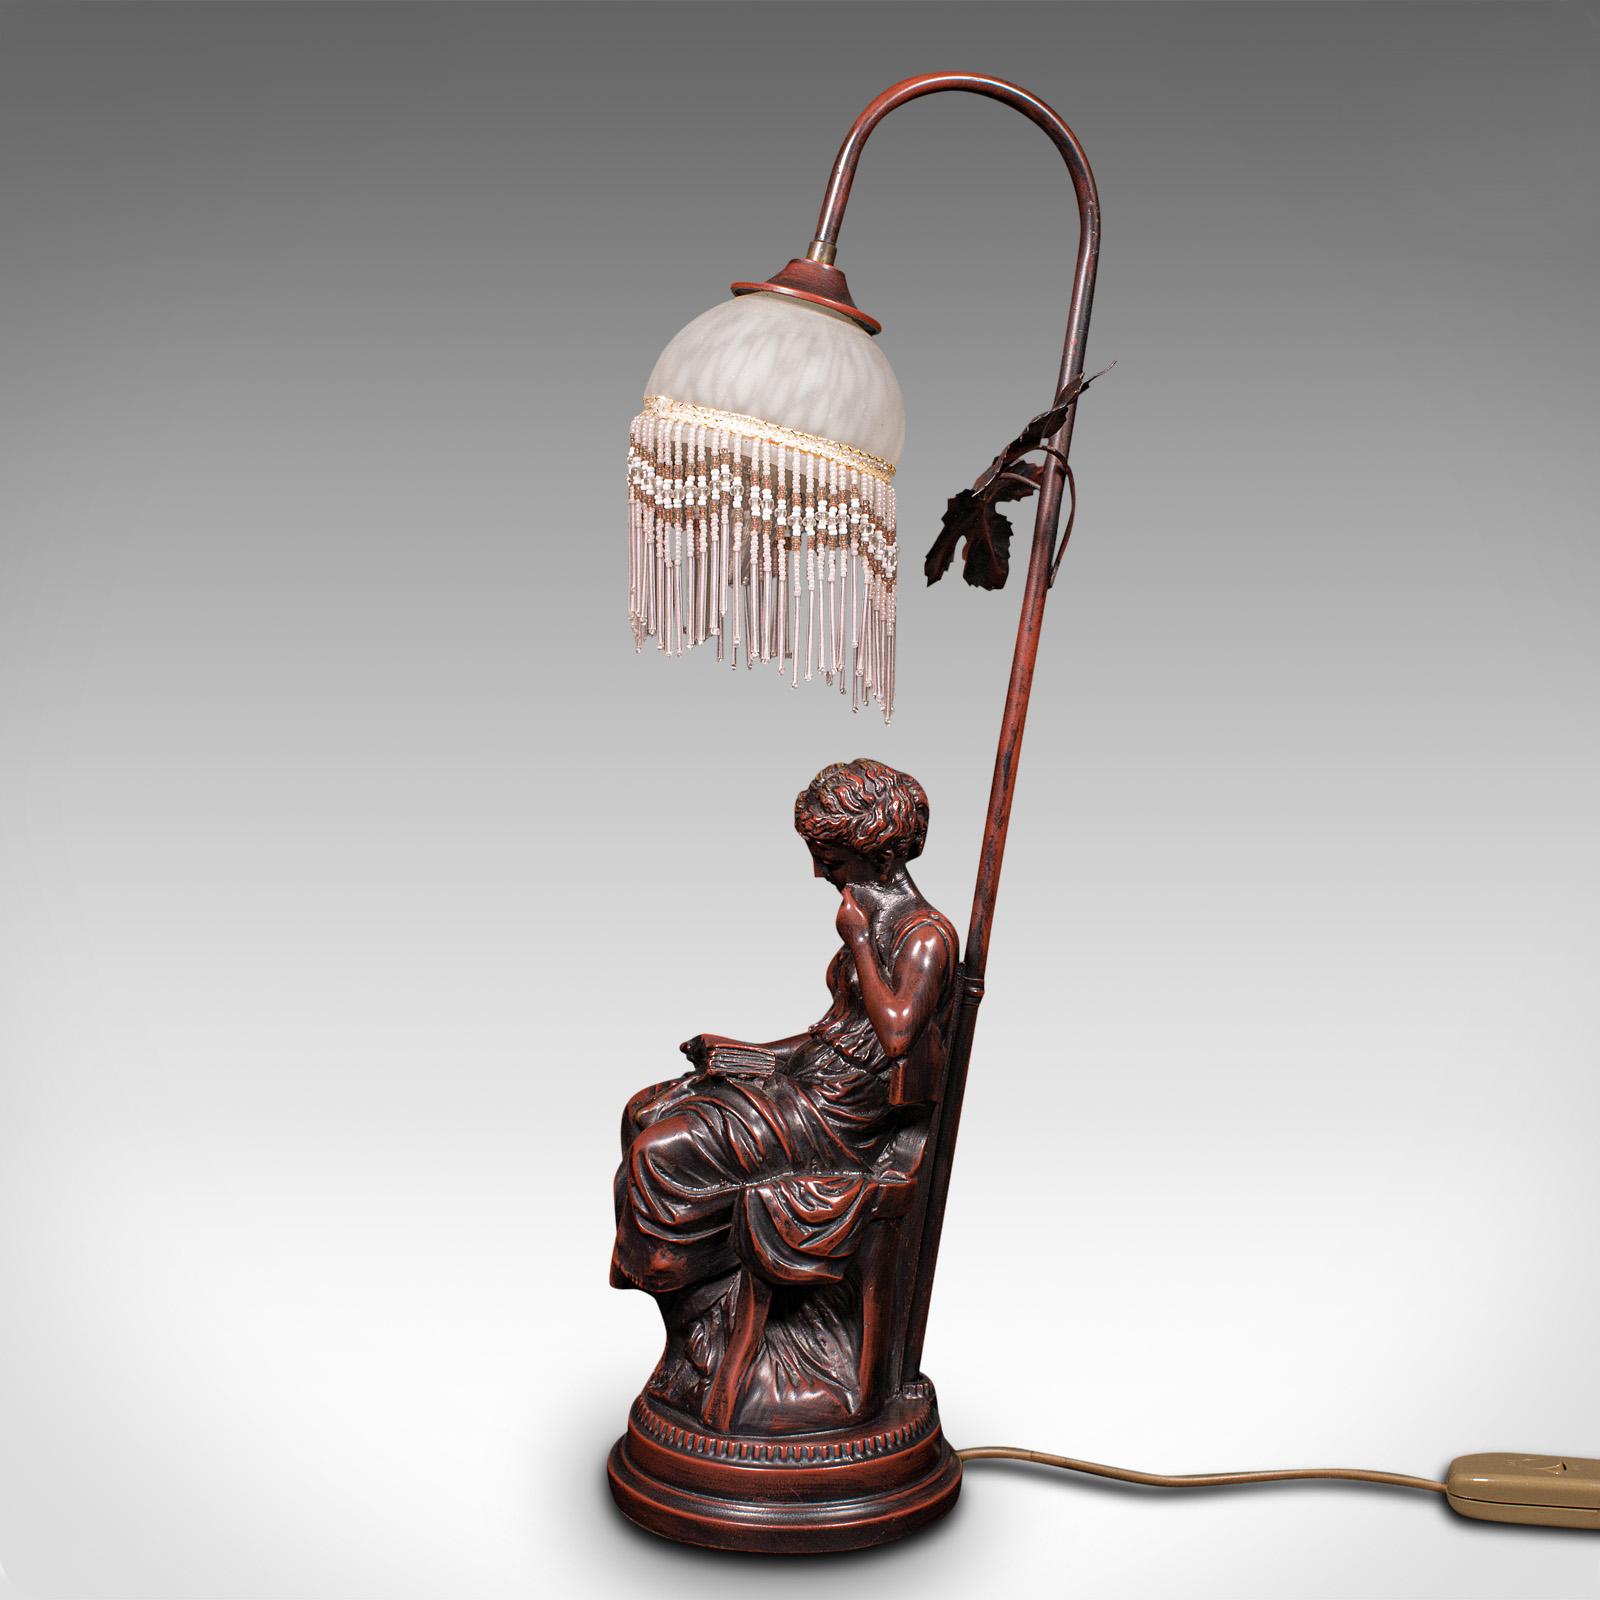 Metal Vintage Decorative Lamp, French, Bronzed, Figural Light, Art Nouveau Revival For Sale